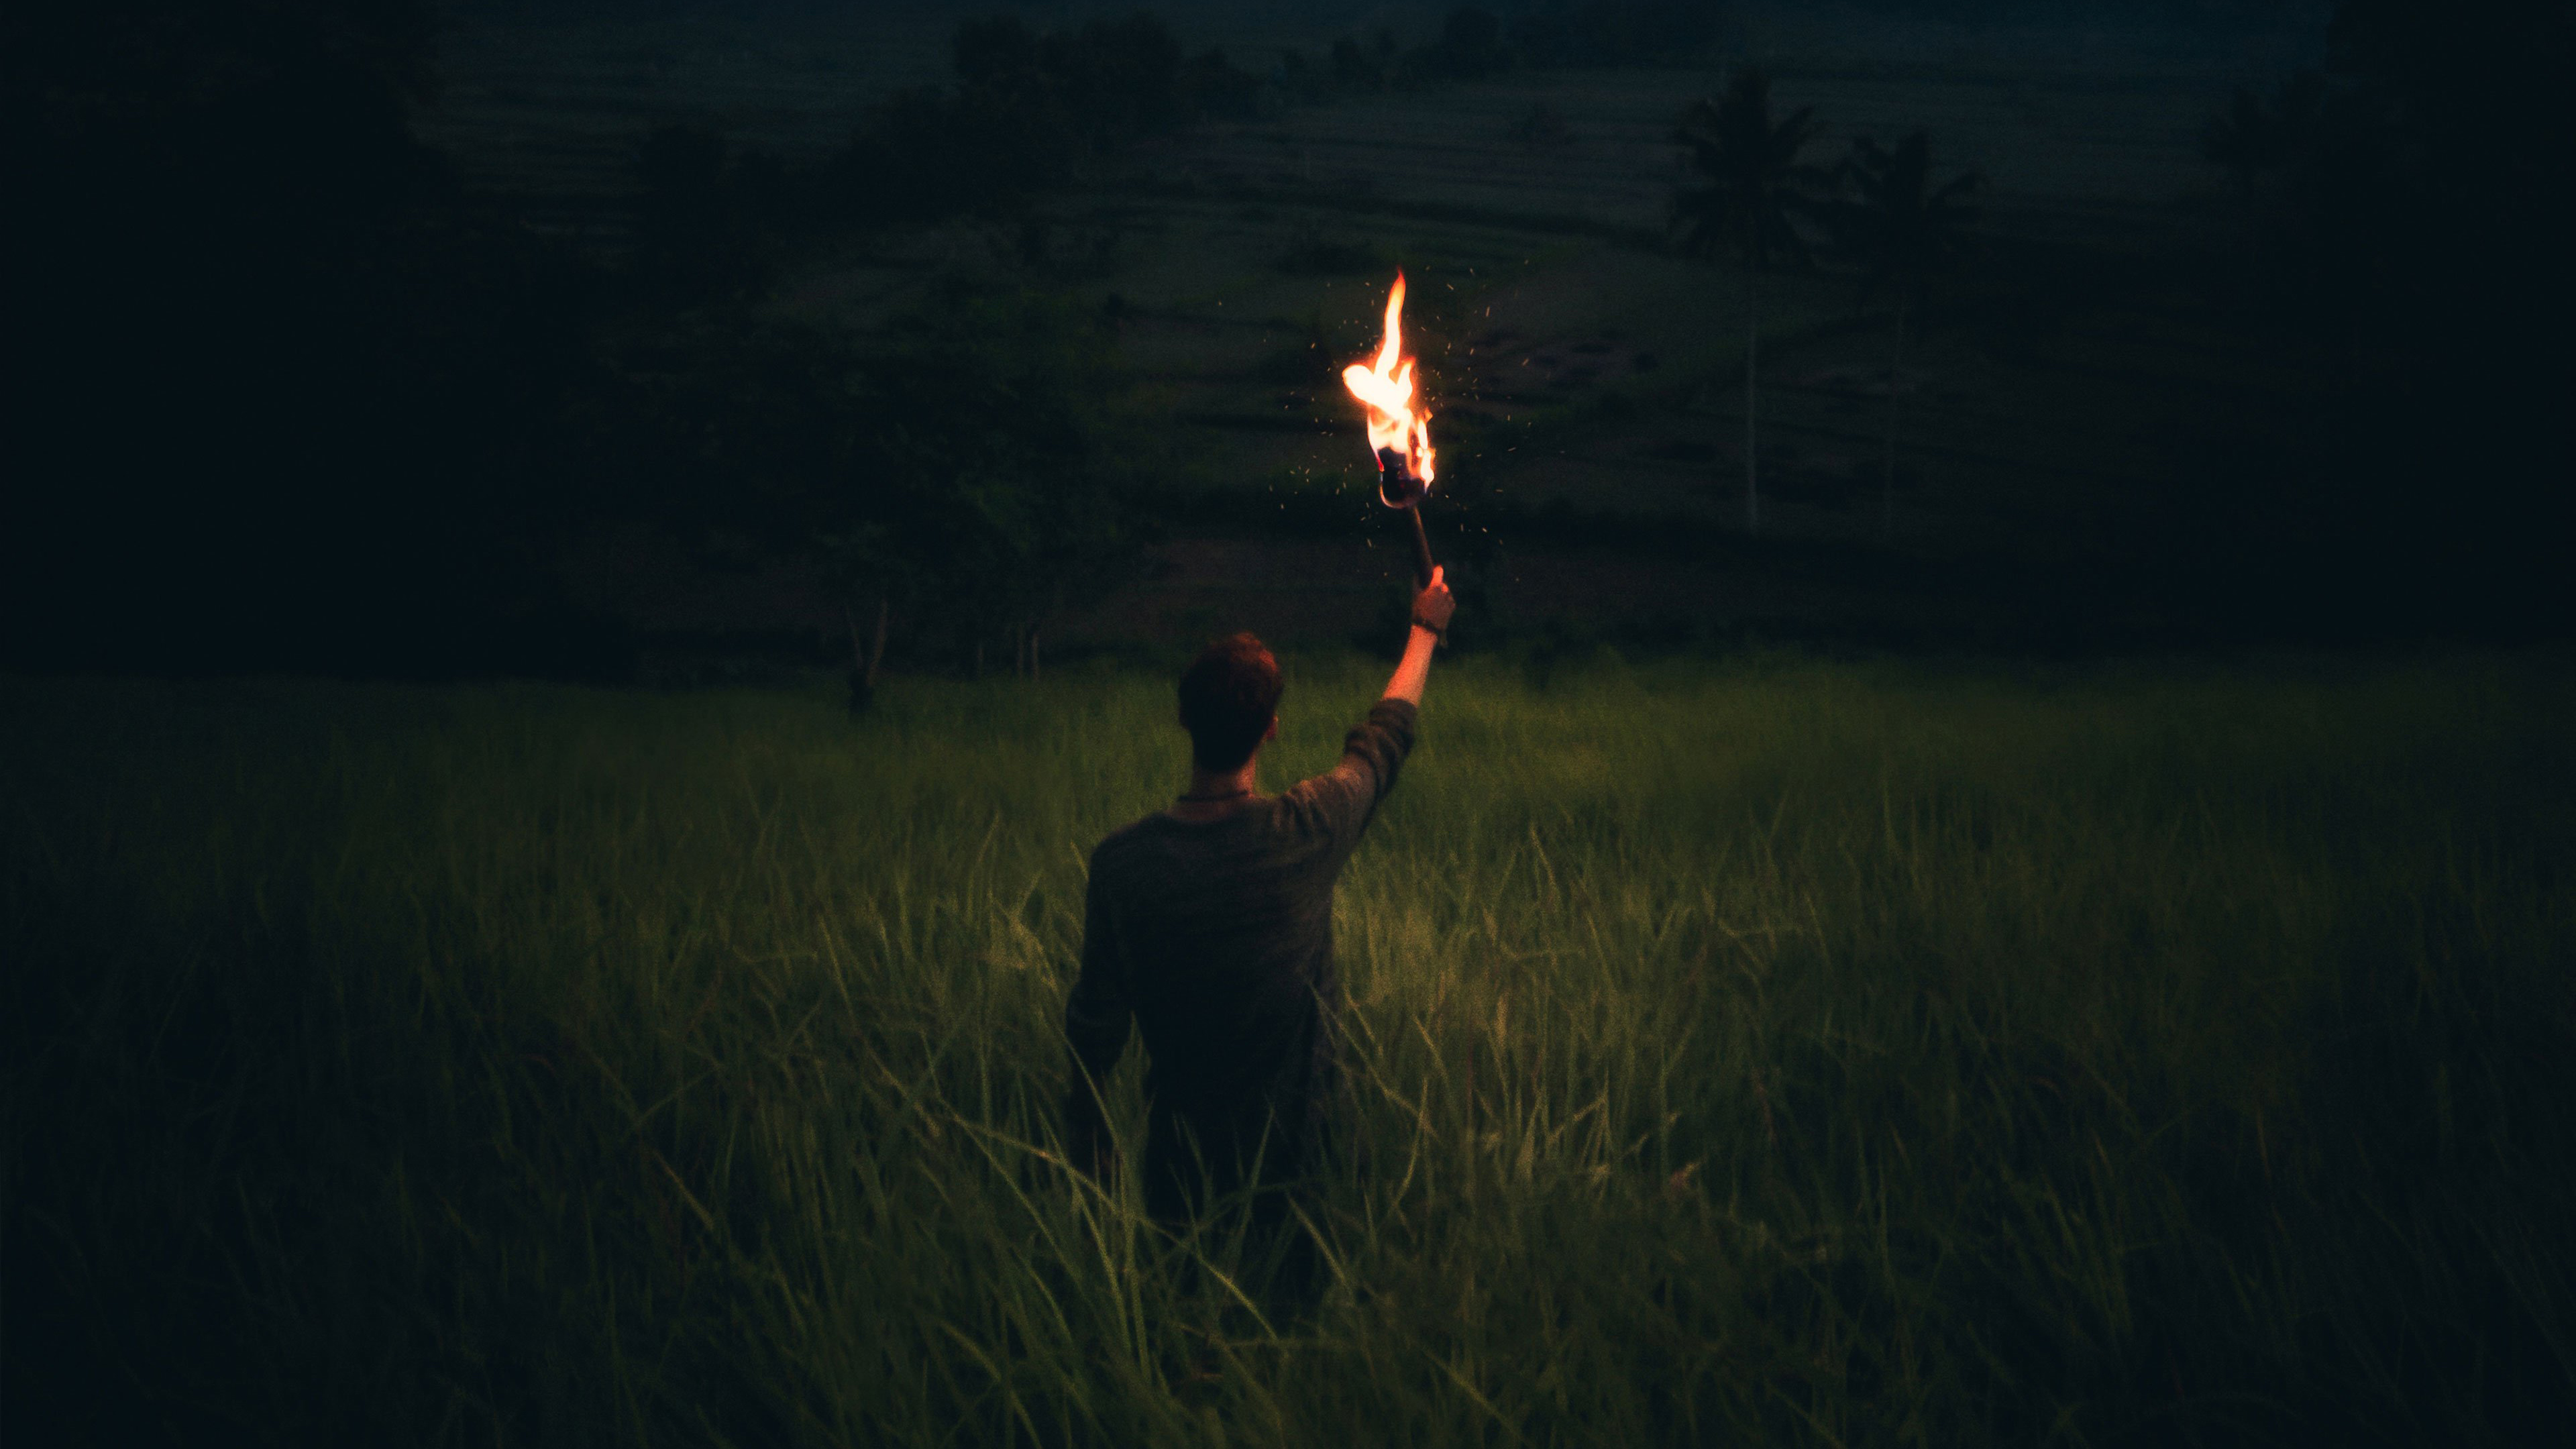 Раз горят огни. Человек факел. Человек с факелом в темноте. Мужик с факелом. Факел во тьме.